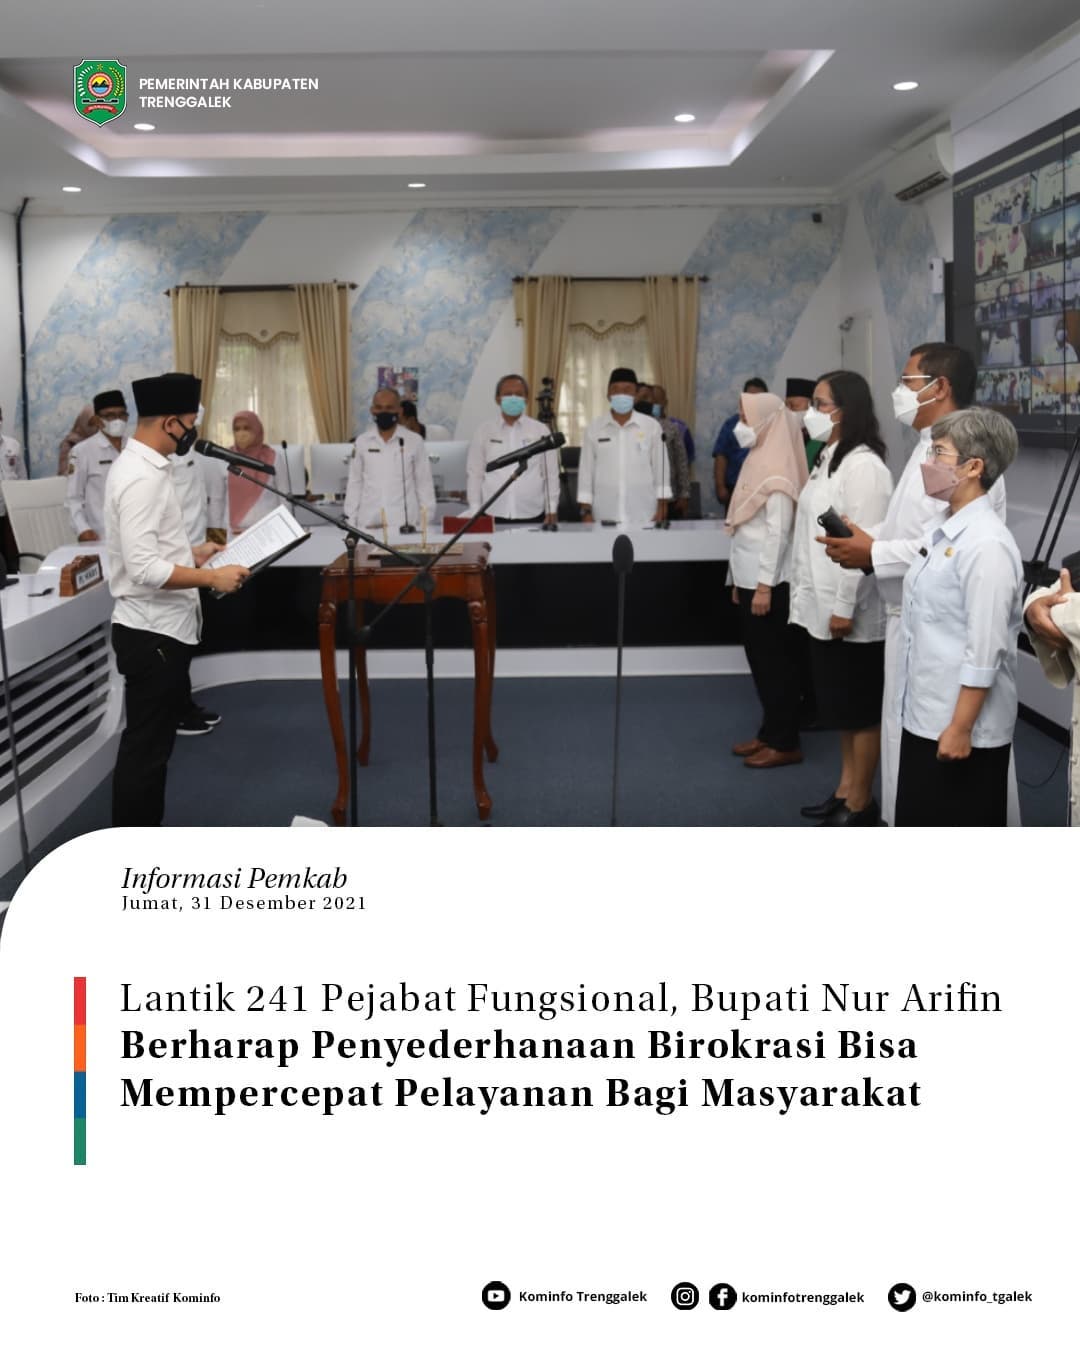 Lantik 241 Pejabat Fugnsional, Bupati Nur Arifin Berharap Penyederhanaan Birokrasi Bisa Mempercepat Pelayanan Bagi Masyarakat